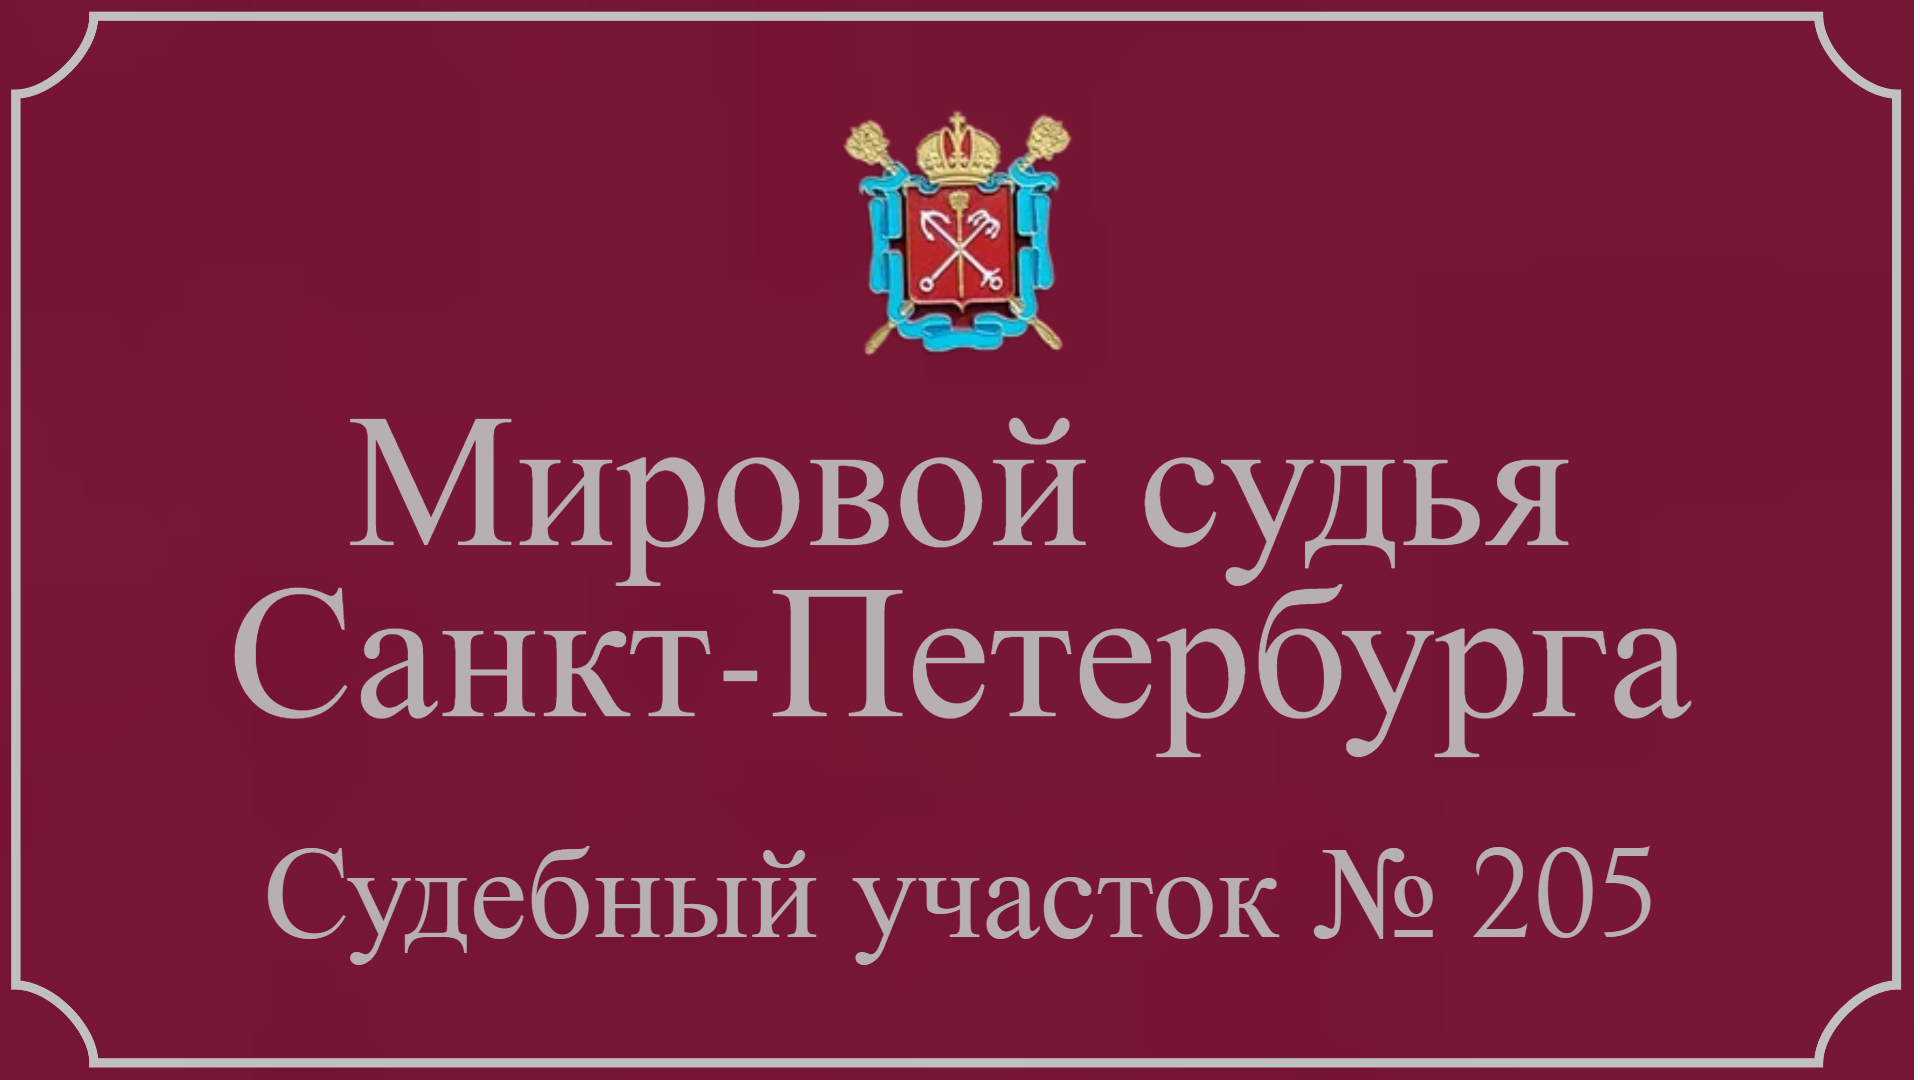 Информация по 205 судебному участку в Санкт-Петербурге.